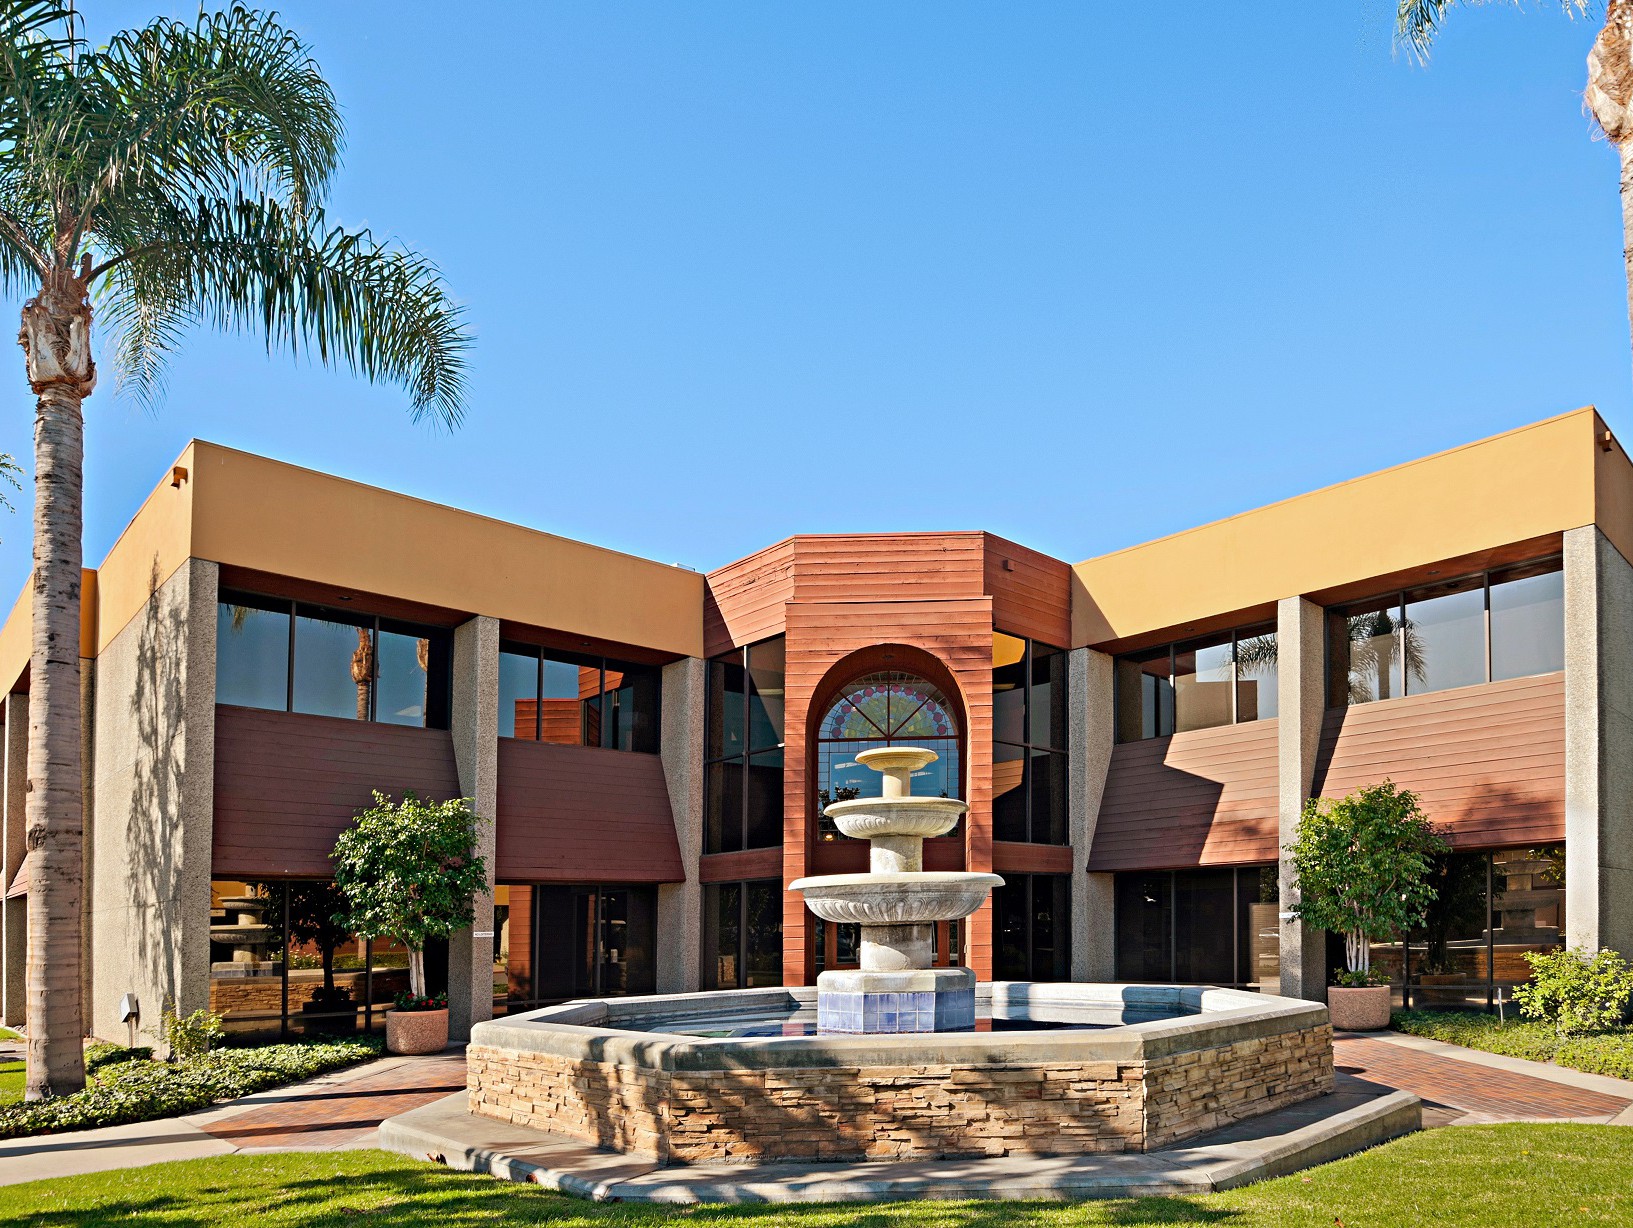 Orangewood Business Plaza, Orange, Calif.